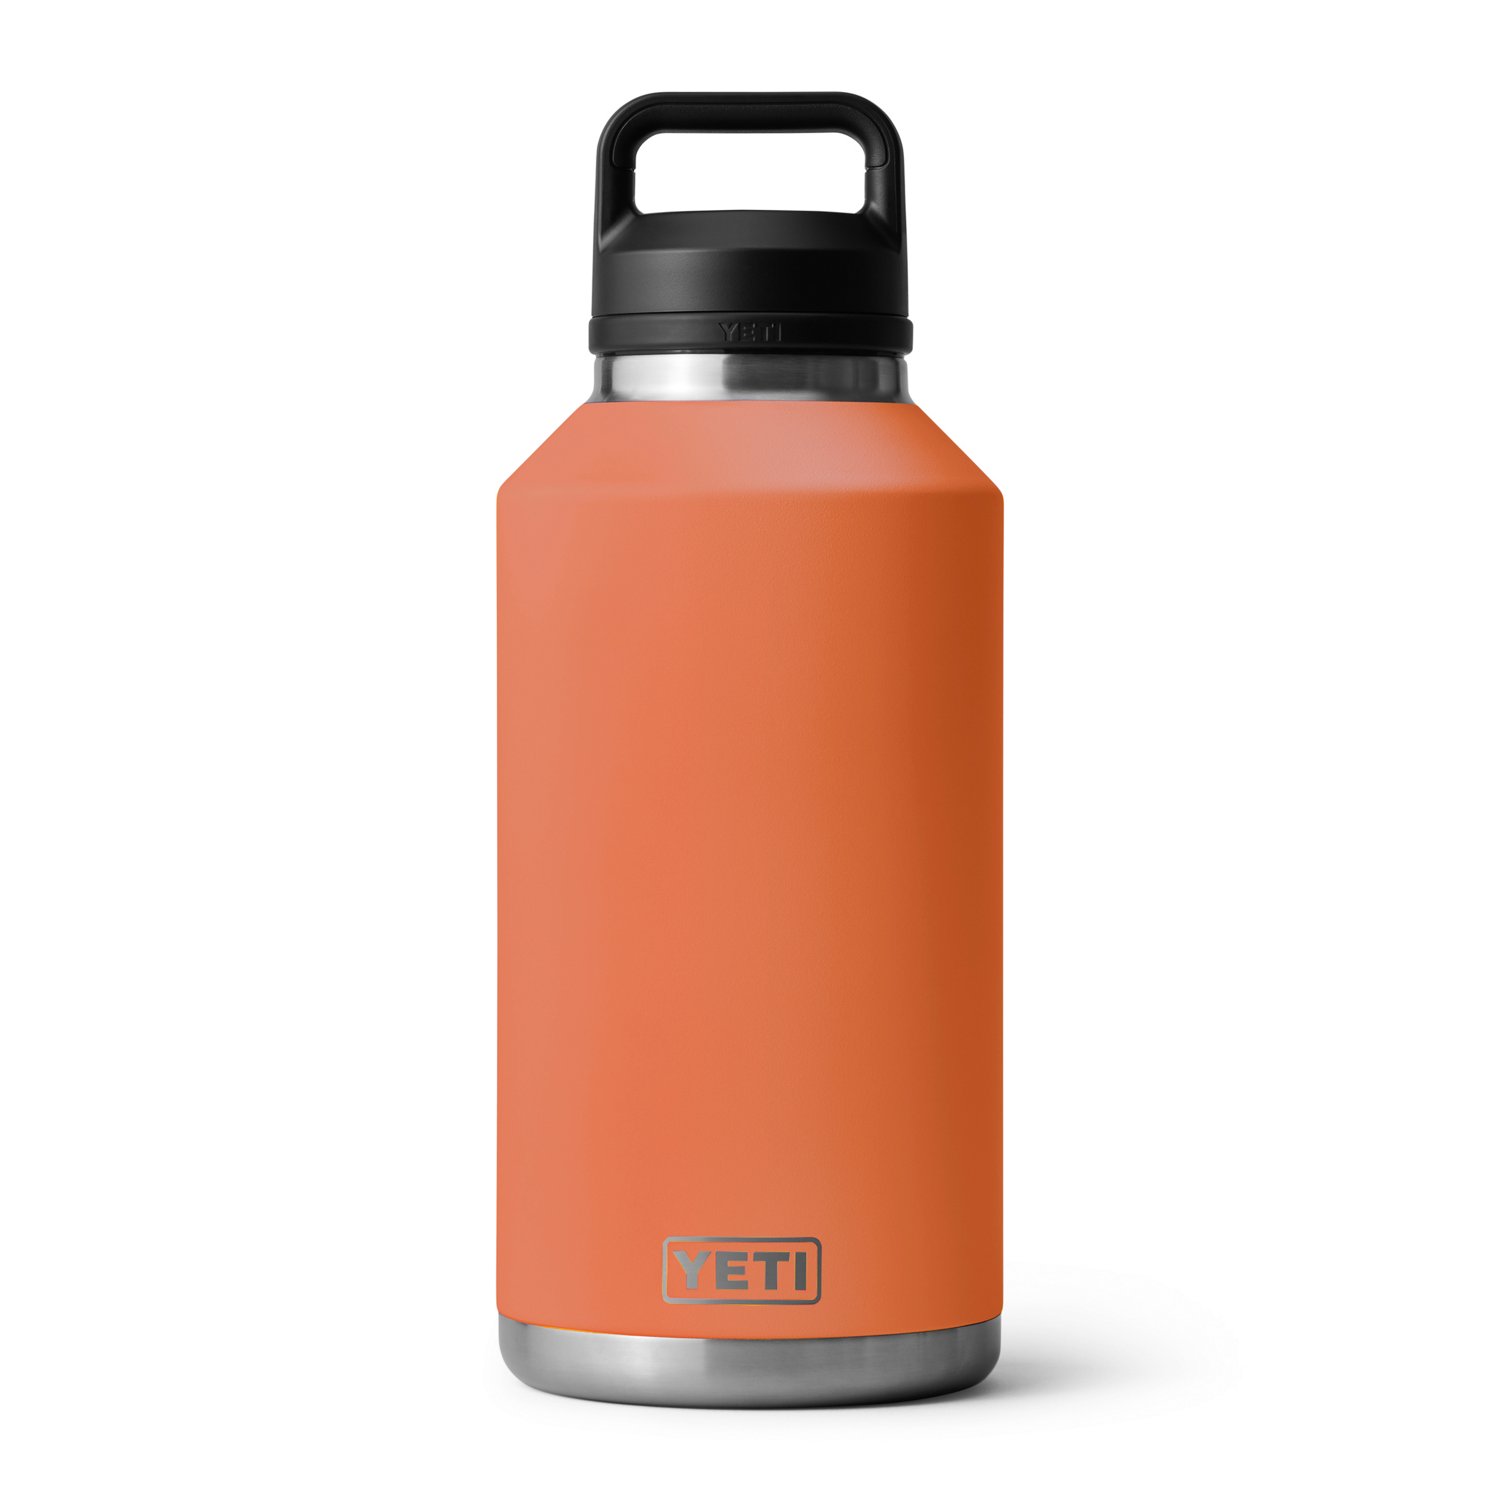 YETI Rambler Bottle - 64 oz. - Chug Cap - Harvest Red - TackleDirect